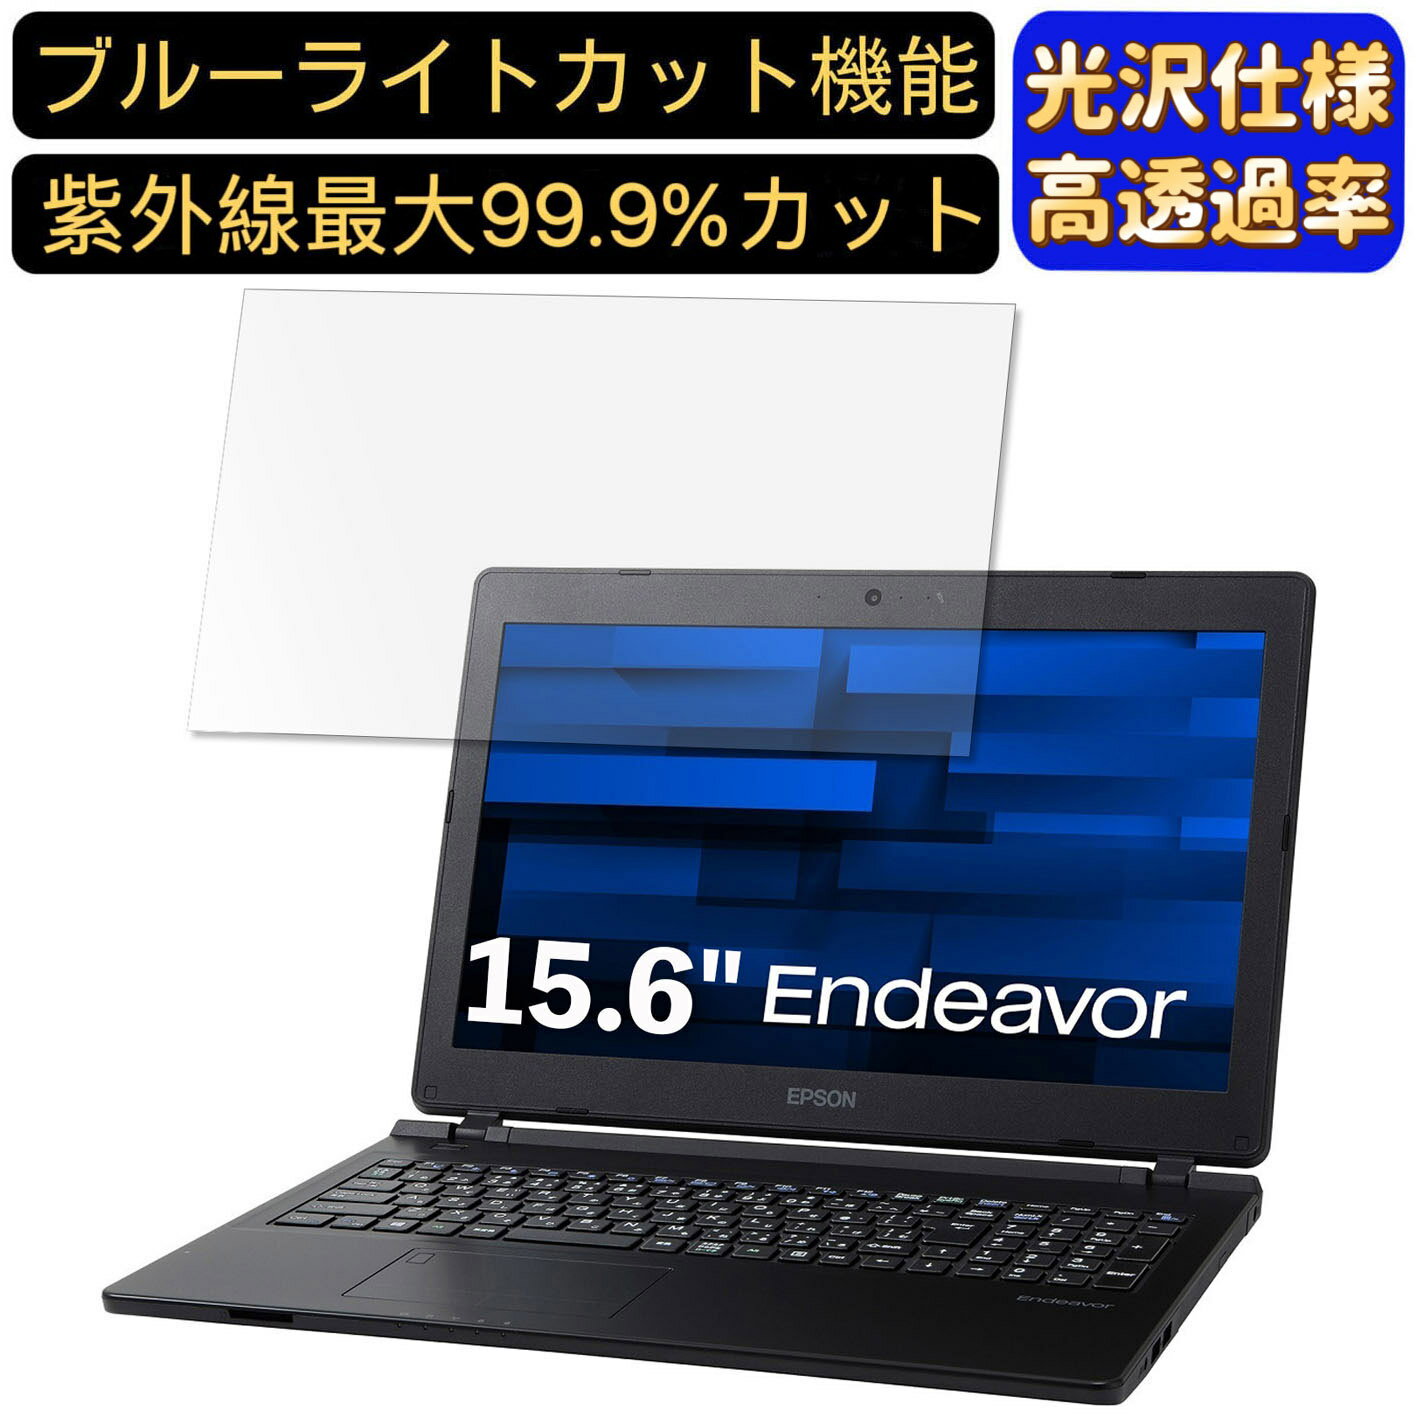 【ポイント2倍】EPSON Endeavor JN4300-2 15